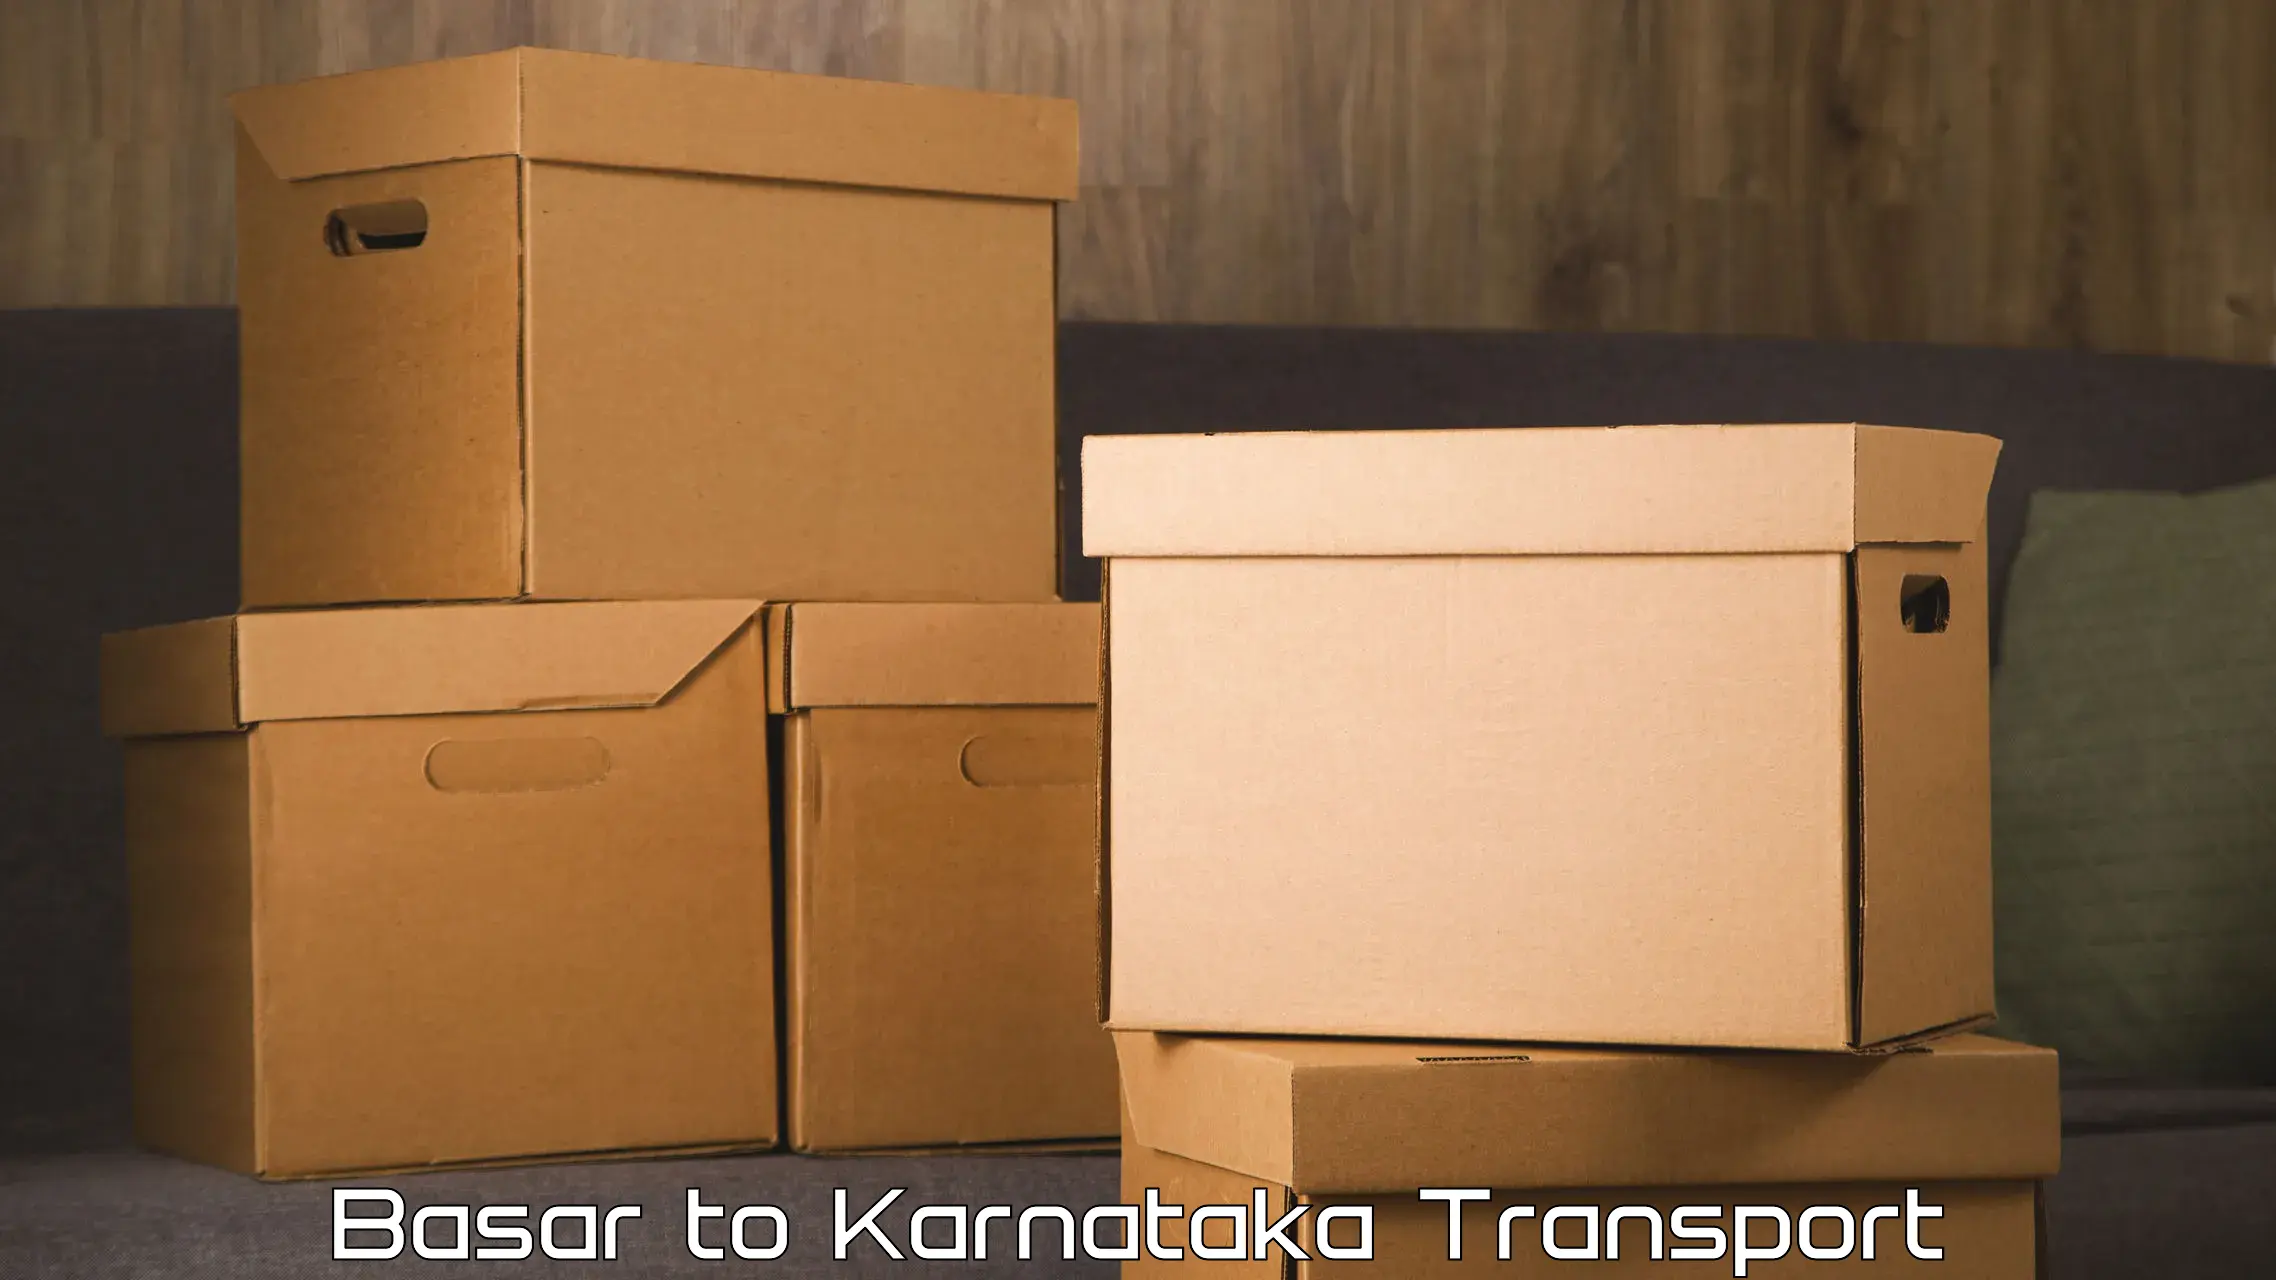 Vehicle parcel service Basar to Kanjarakatte